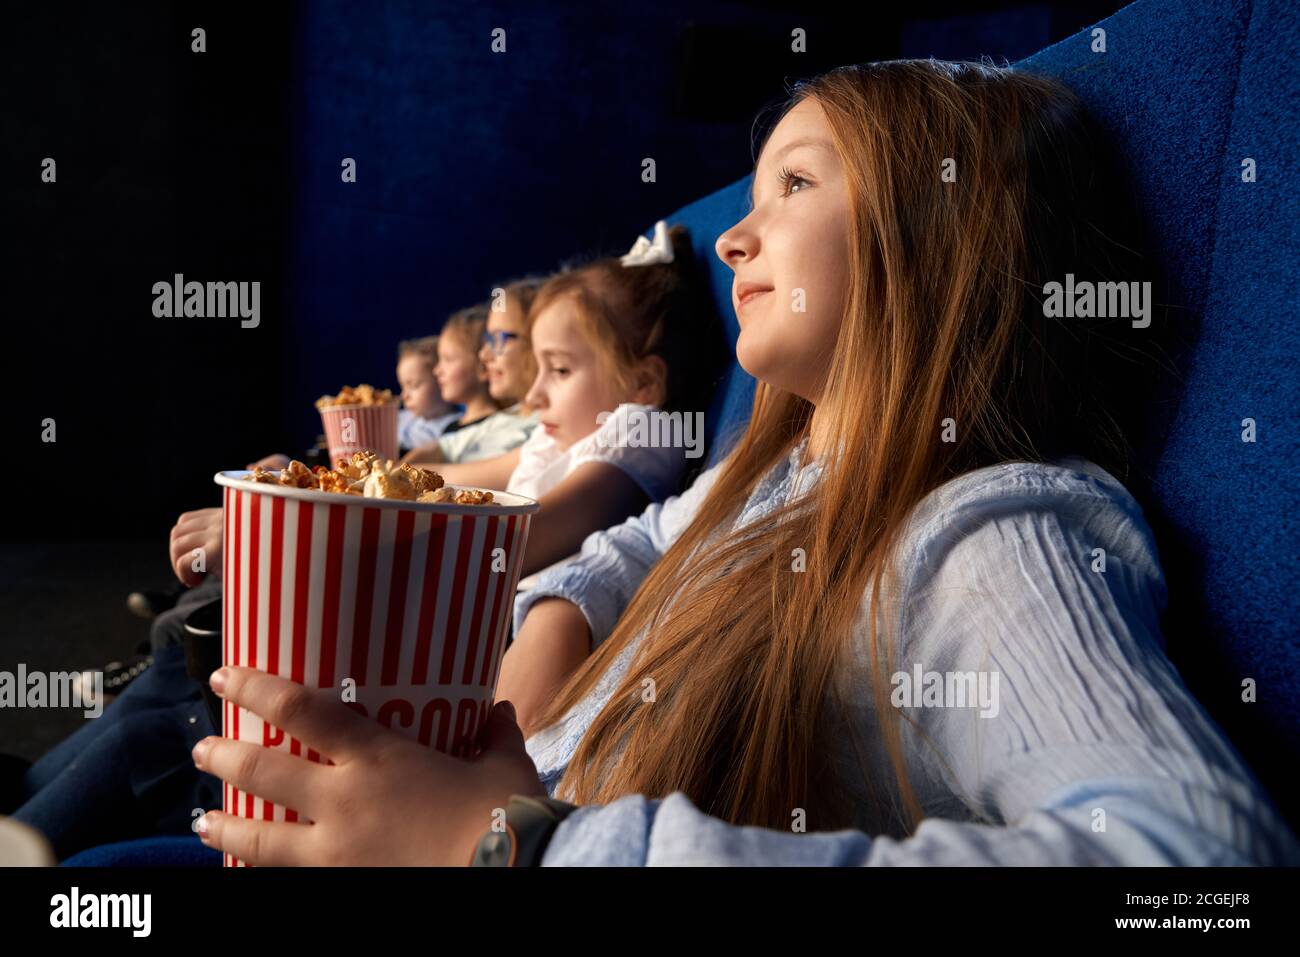 Objectif sélectif de la jolie petite fille tenant le seau à pop-corn, assis avec des amis dans des chaises confortables dans le cinéma. Les enfants regardent des dessins animés ou des films, s'amusent. Loisirs, concept de divertissement. Banque D'Images